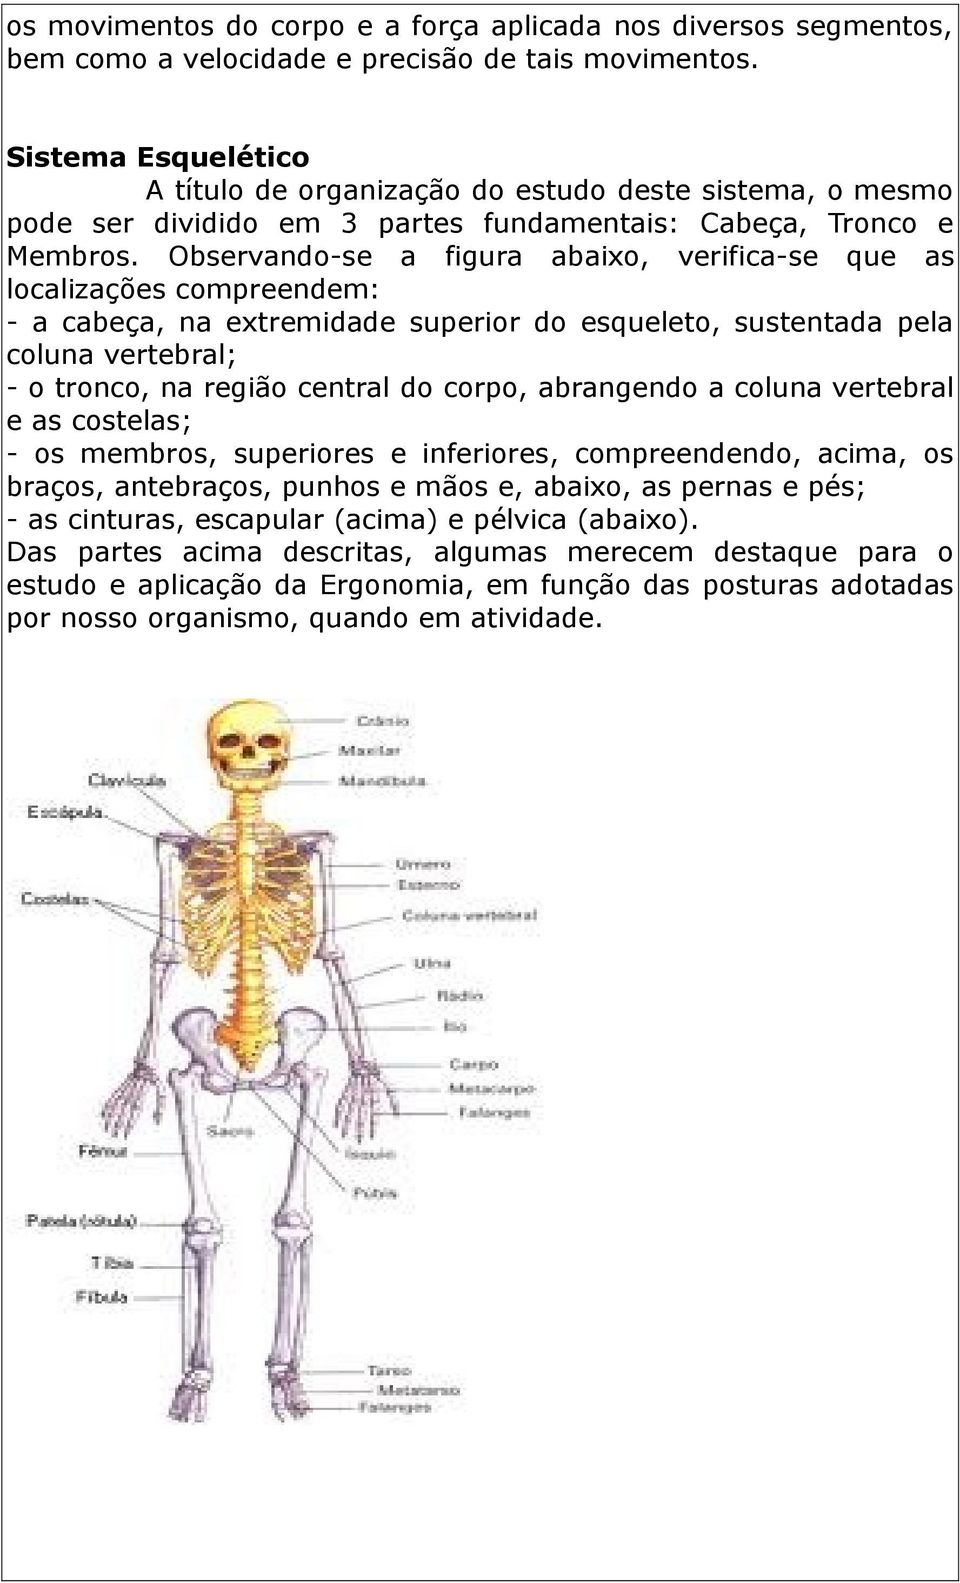 Observando-se a figura abaixo, verifica-se que as localizações compreendem: - a cabeça, na extremidade superior do esqueleto, sustentada pela coluna vertebral; - o tronco, na região central do corpo,